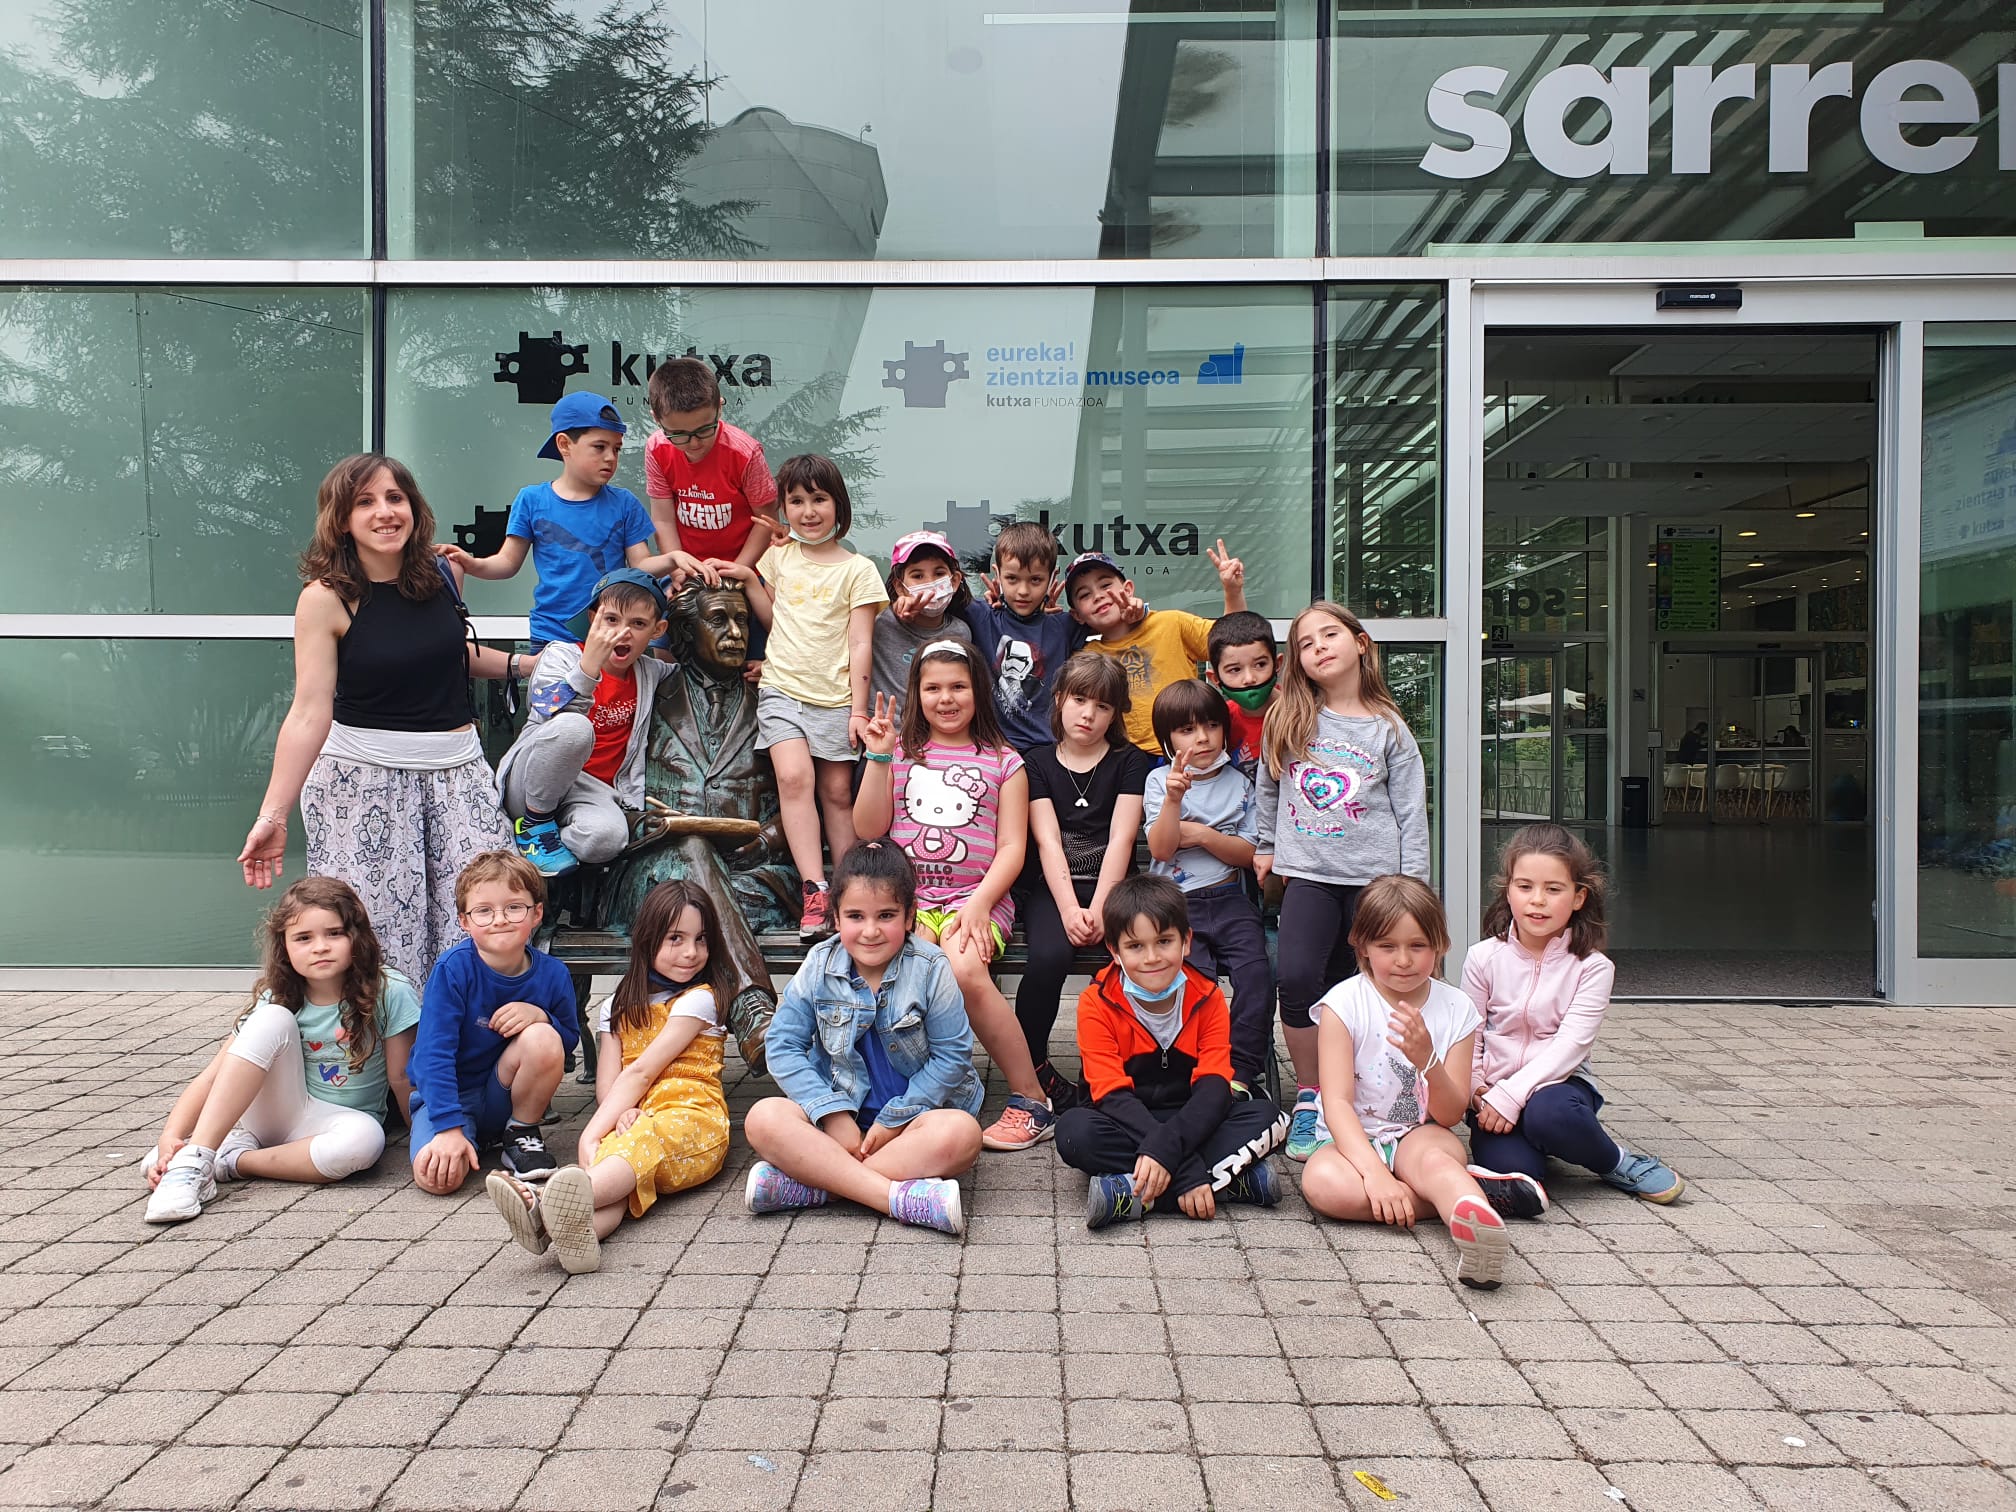 El miércoles estuvimos con los alumnos de 1º en el museo de ciencias Eureka de Donostia. ¡Conocimos a Albert Einstein y fue una magnífica oportunidad de ver la ciencia de cerca!